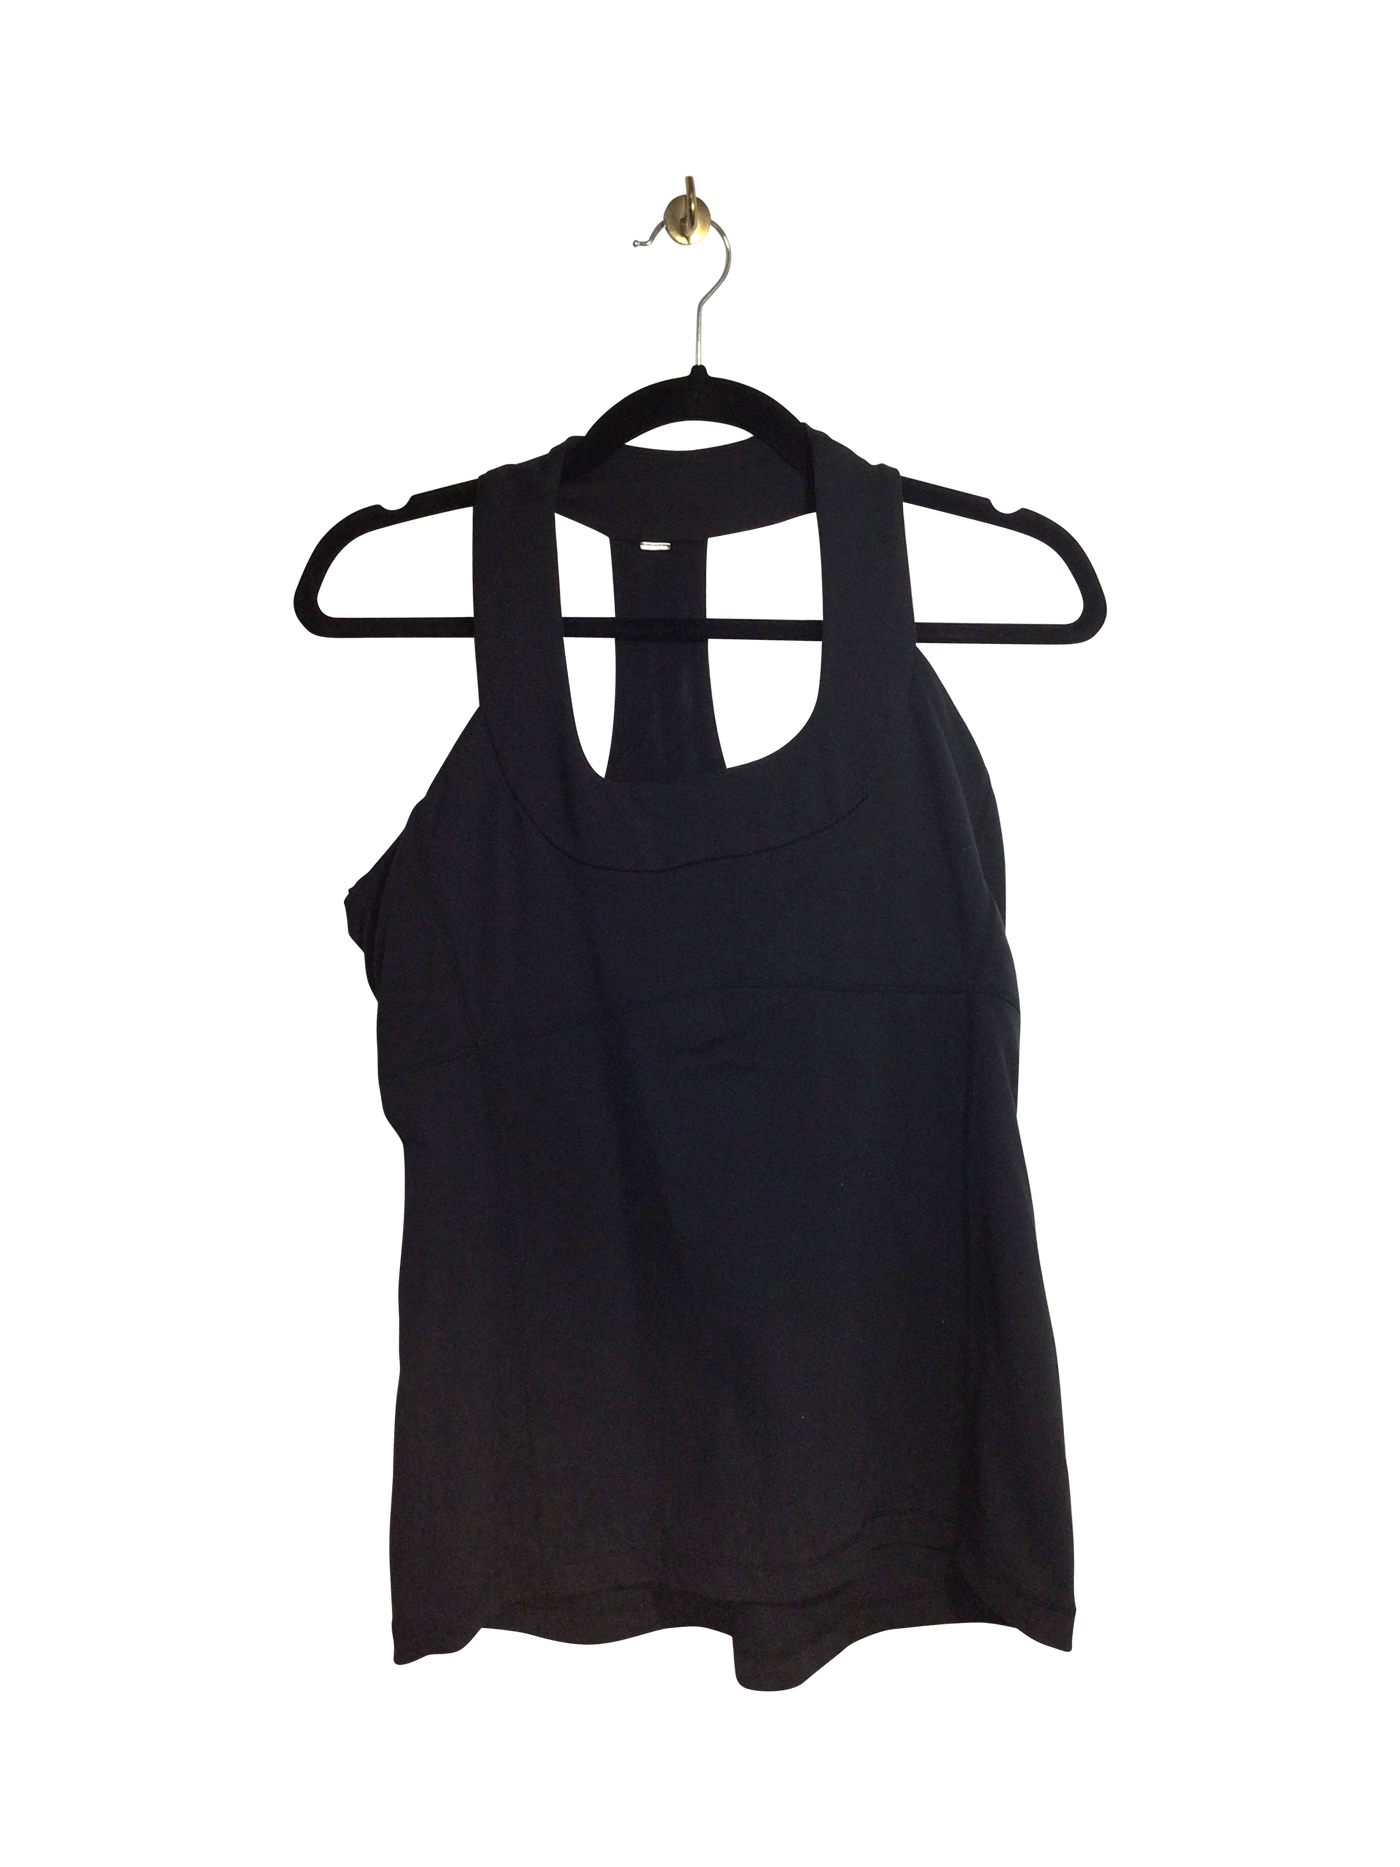 LULULEMON Women Activewear Tops Regular fit in Black - Size S | 21.99 $ KOOP